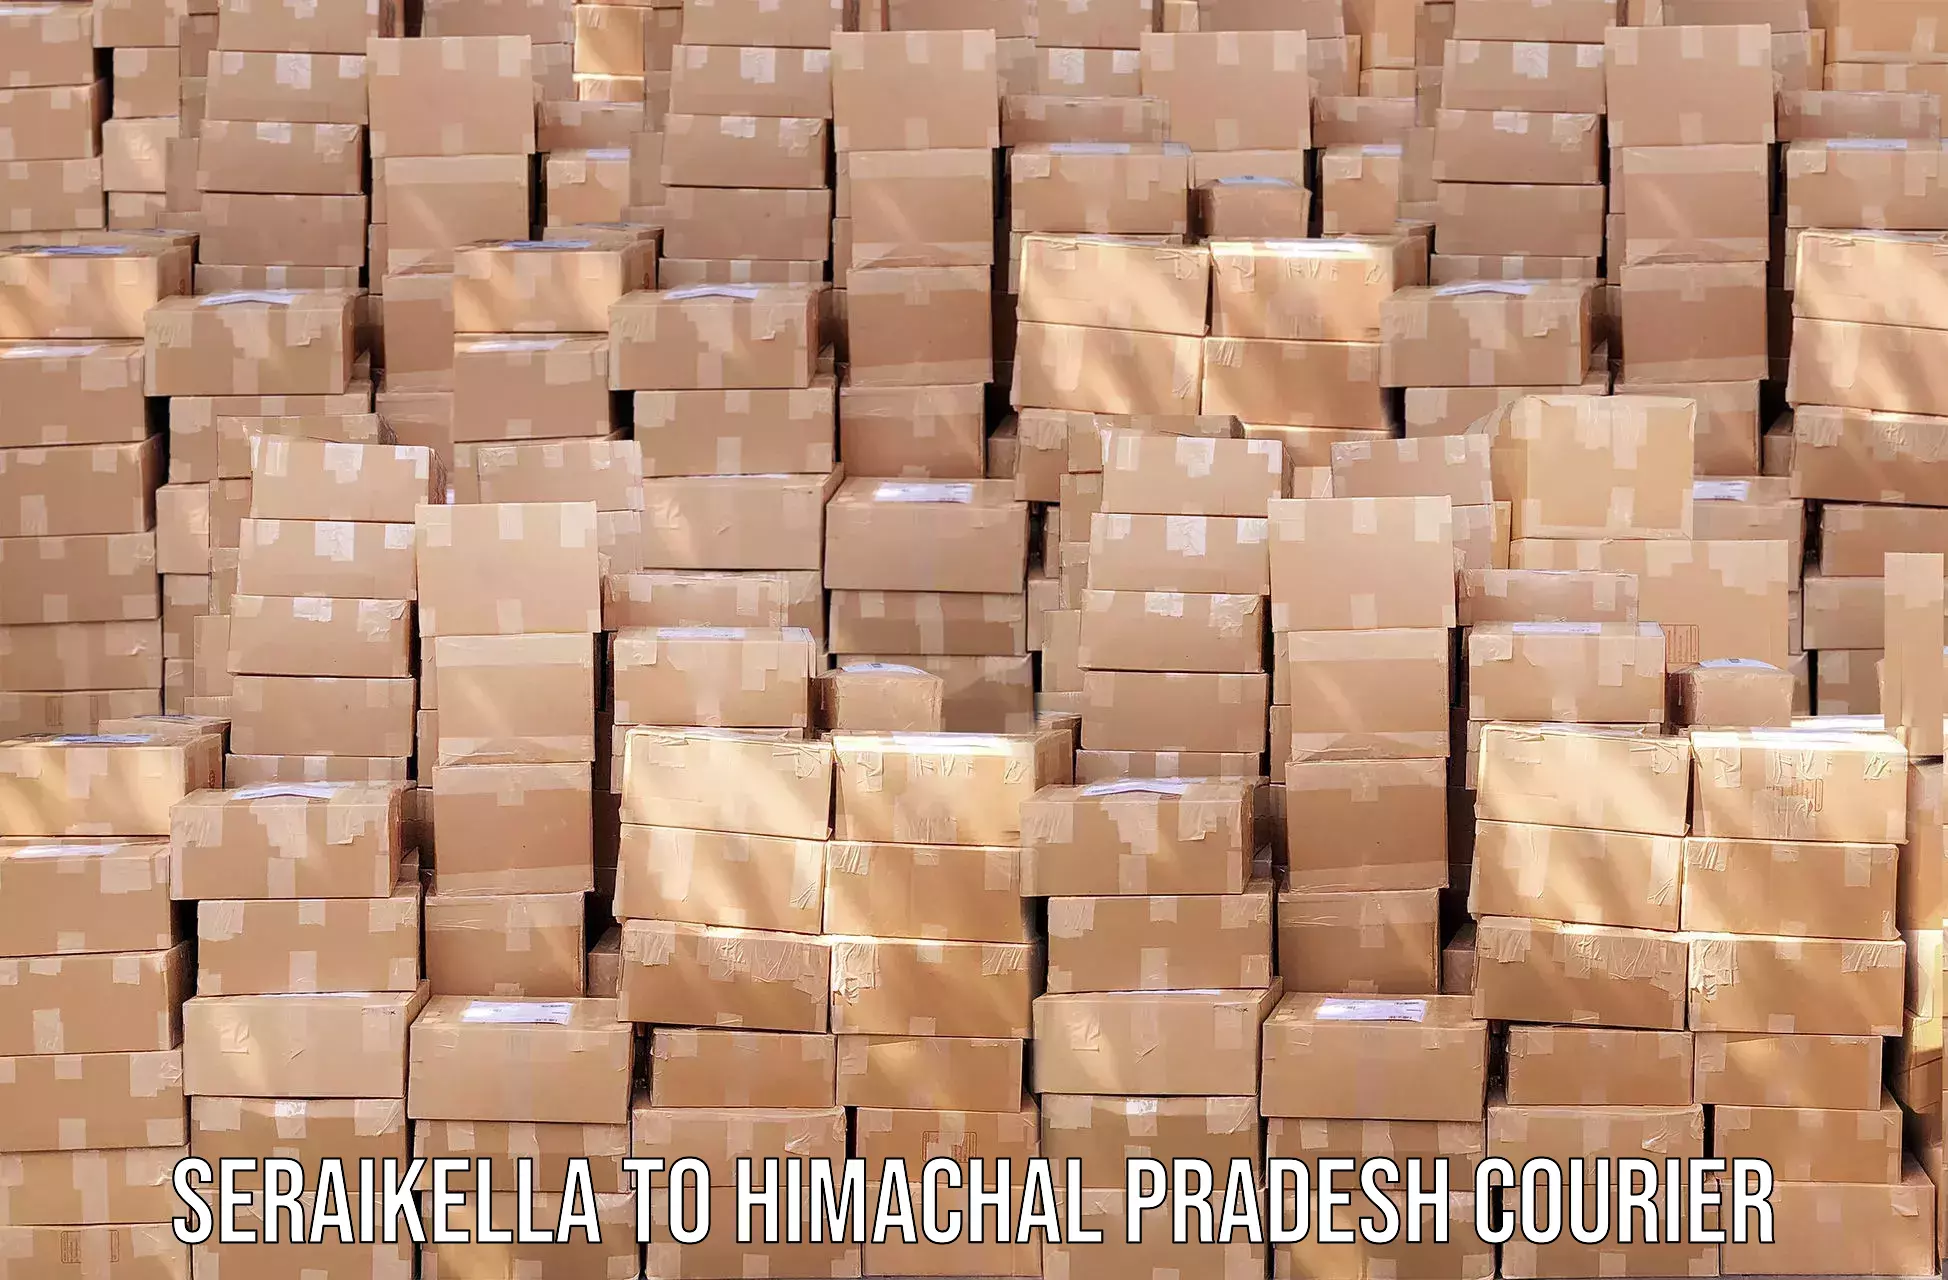 On-call courier service Seraikella to Jaisinghpur